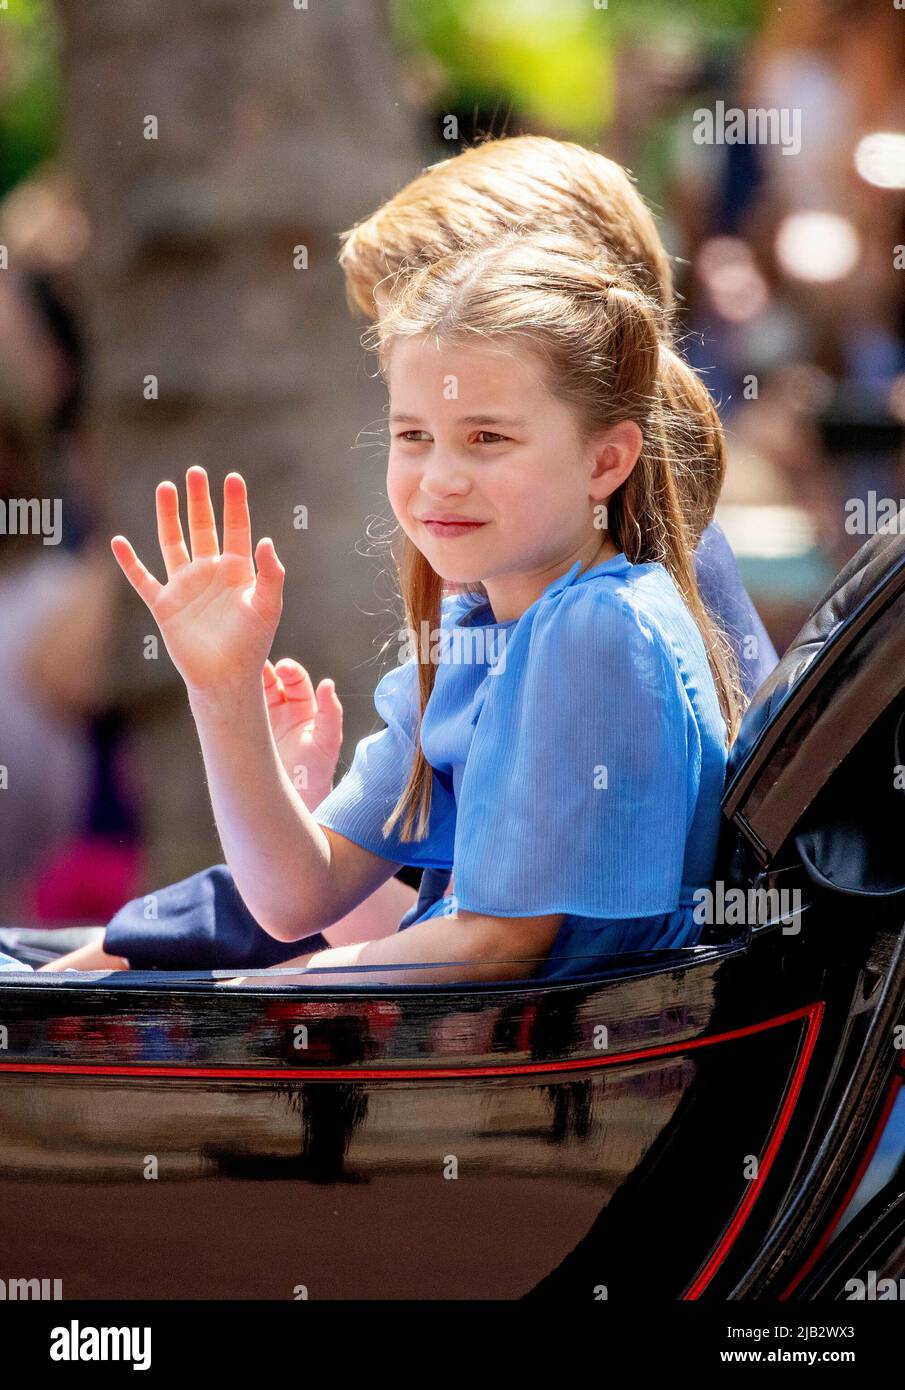 La princesa Charlotte en el centro comercial de Londres, el 02 de junio de 2022, después de asistir a Trooping the colour, parte de las celebraciones del Jubileo Platino de Queens Albert Nieboer/Netherlands OUT/Point de Vue OUT Foto de stock